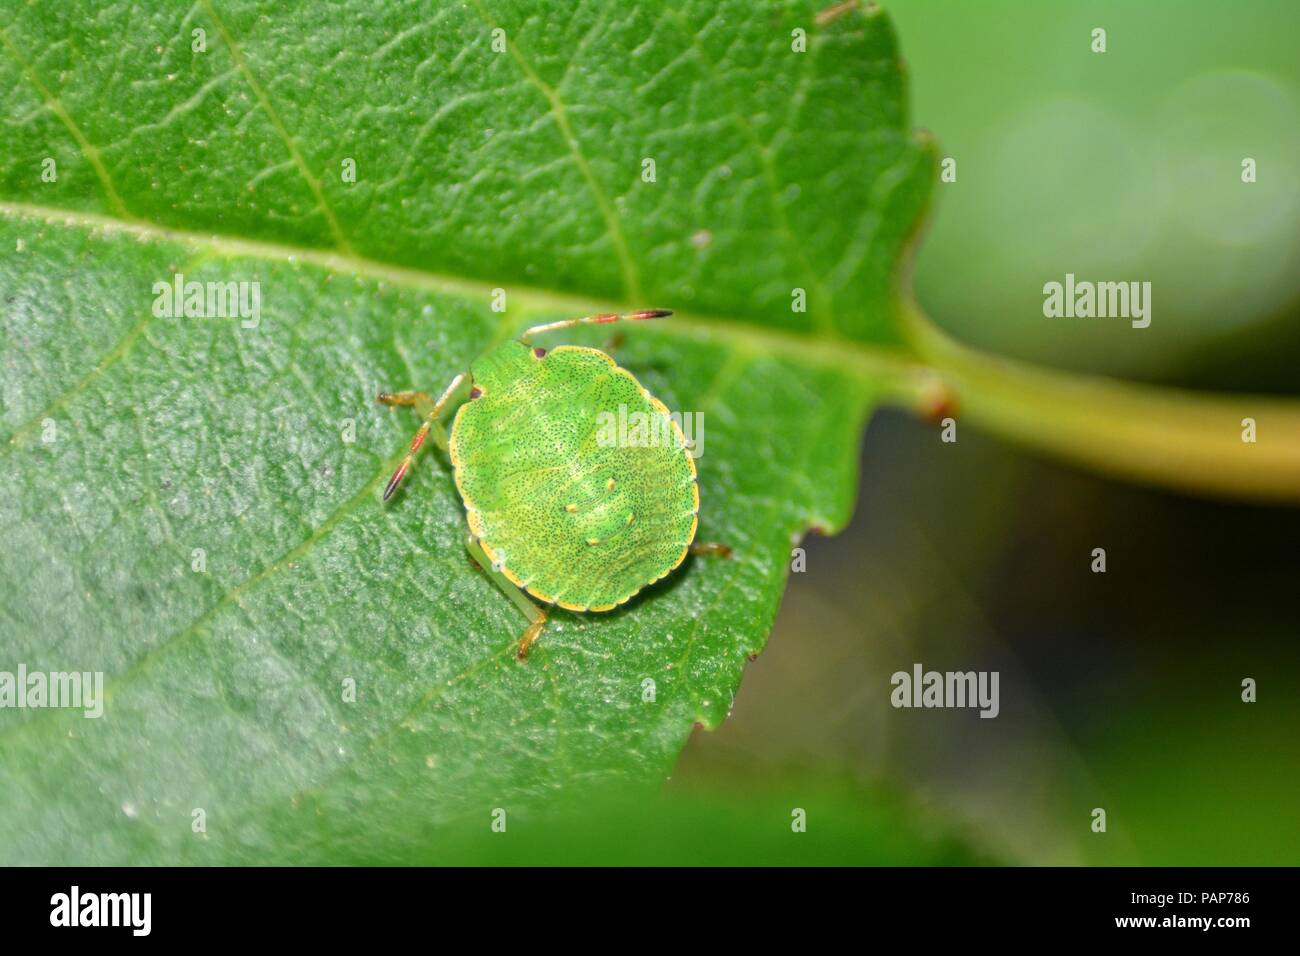 Nymphe d'un green stink bug ( Palomena prasina ) sur feuille verte dans la nature Banque D'Images